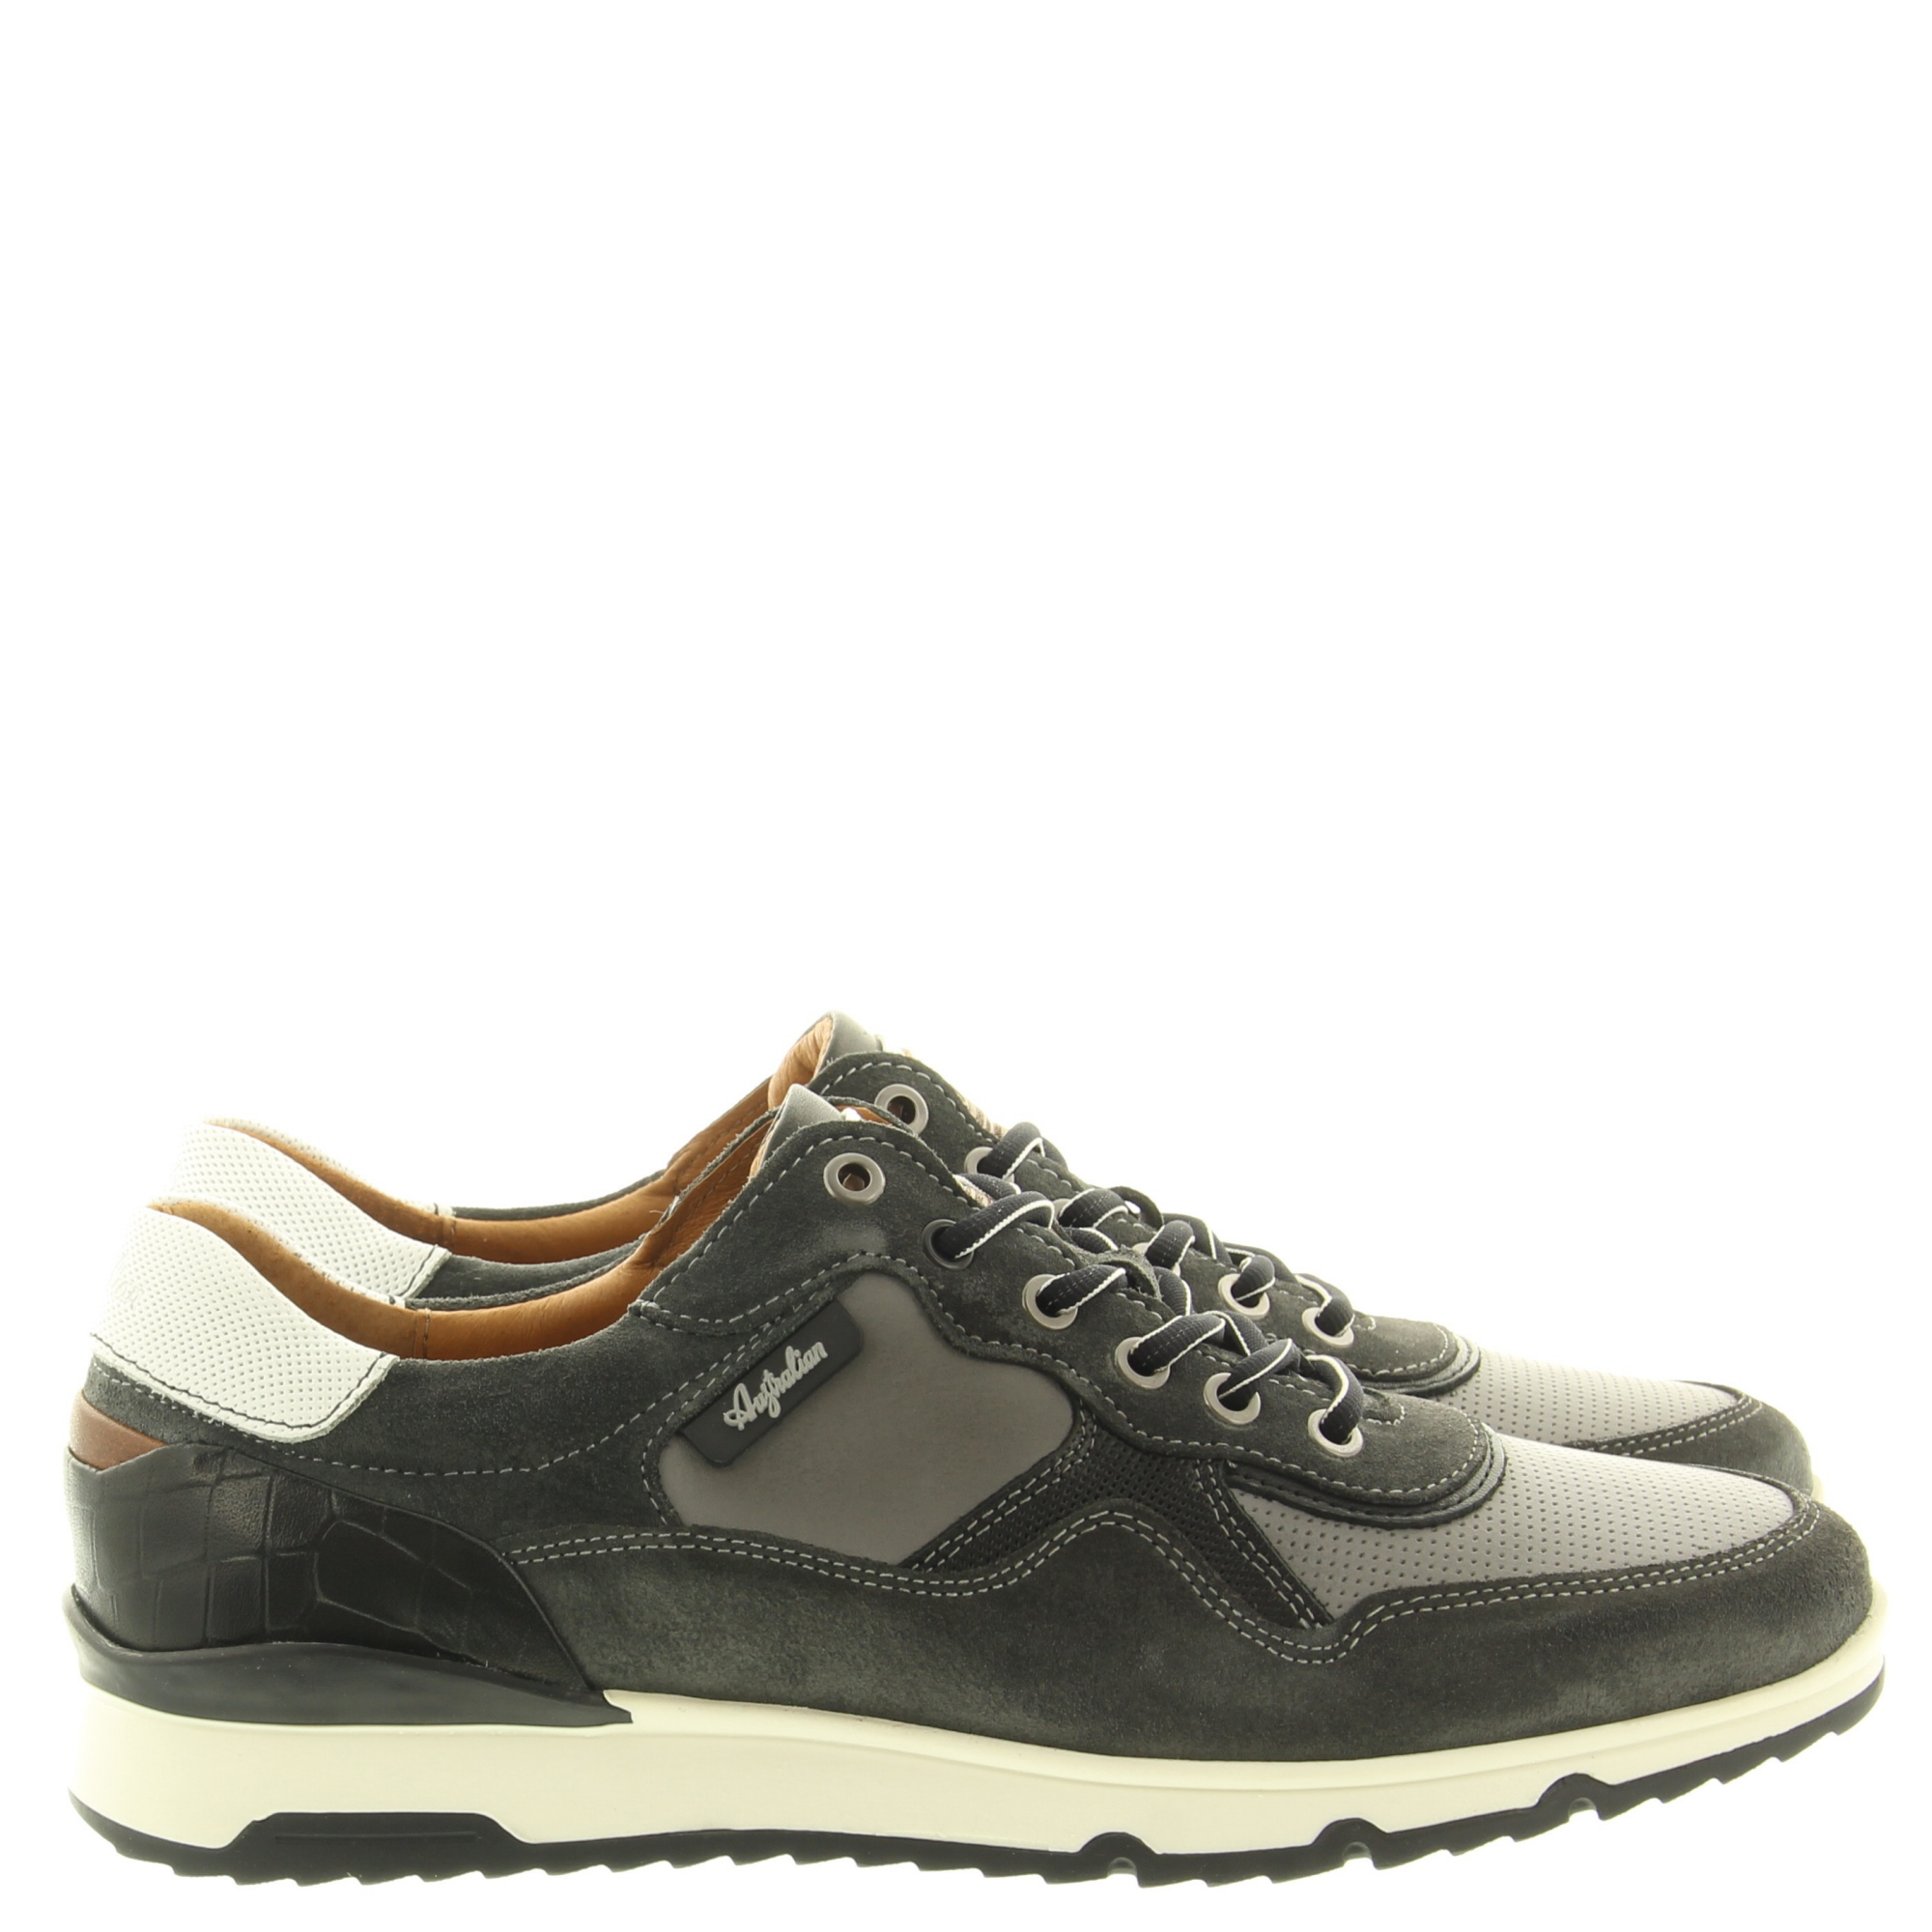 Australian Footwear Mazoni 15.1519.02 K02 Grey black